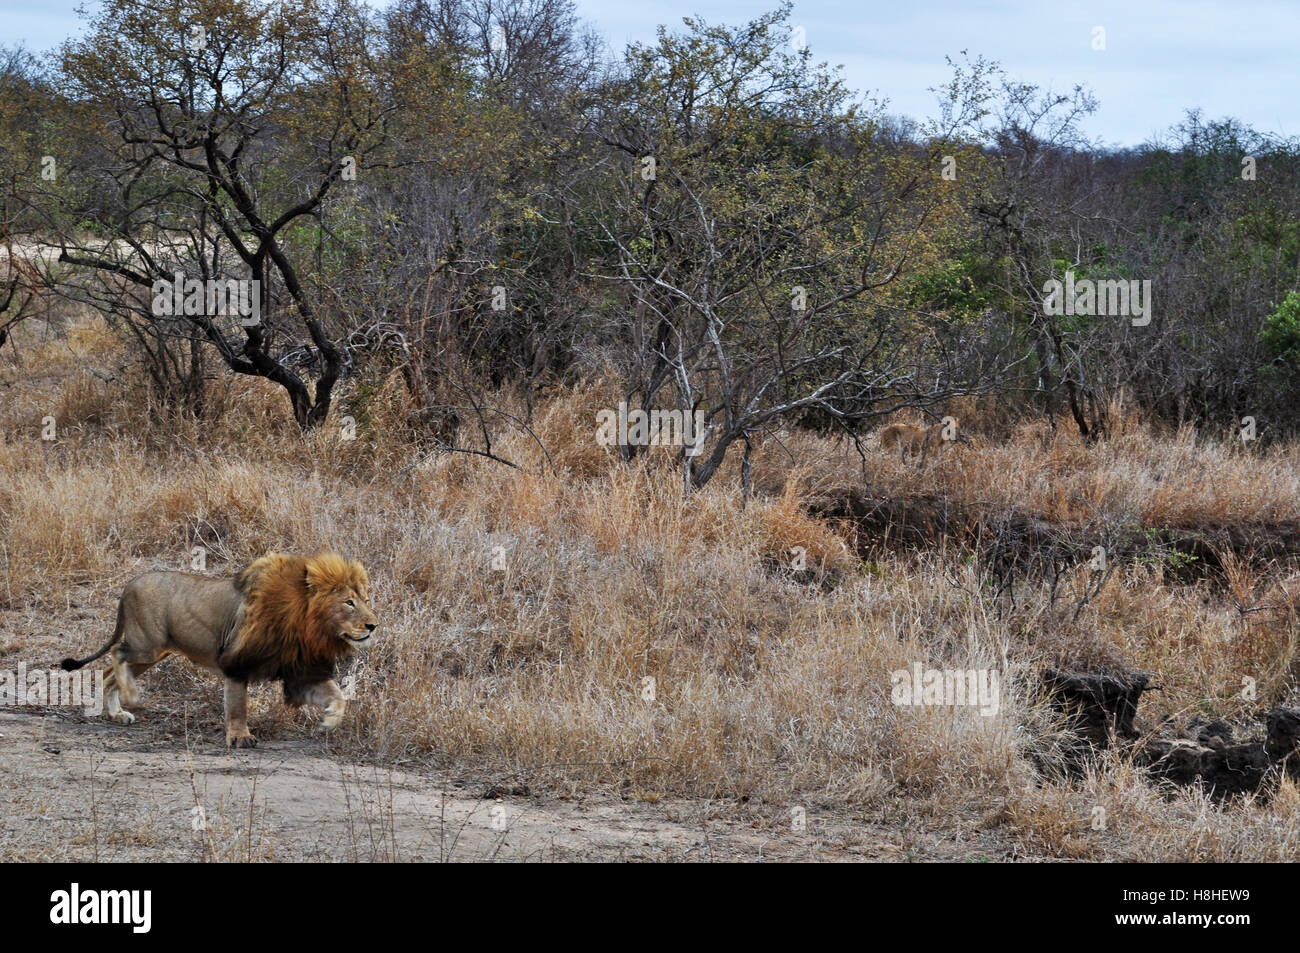 Safari en Afrique du Sud, de la savane africaine : lion, roi de la forêt, dans le Parc National Kruger, la plus grande réserve animalière en Afrique depuis 1898 Banque D'Images